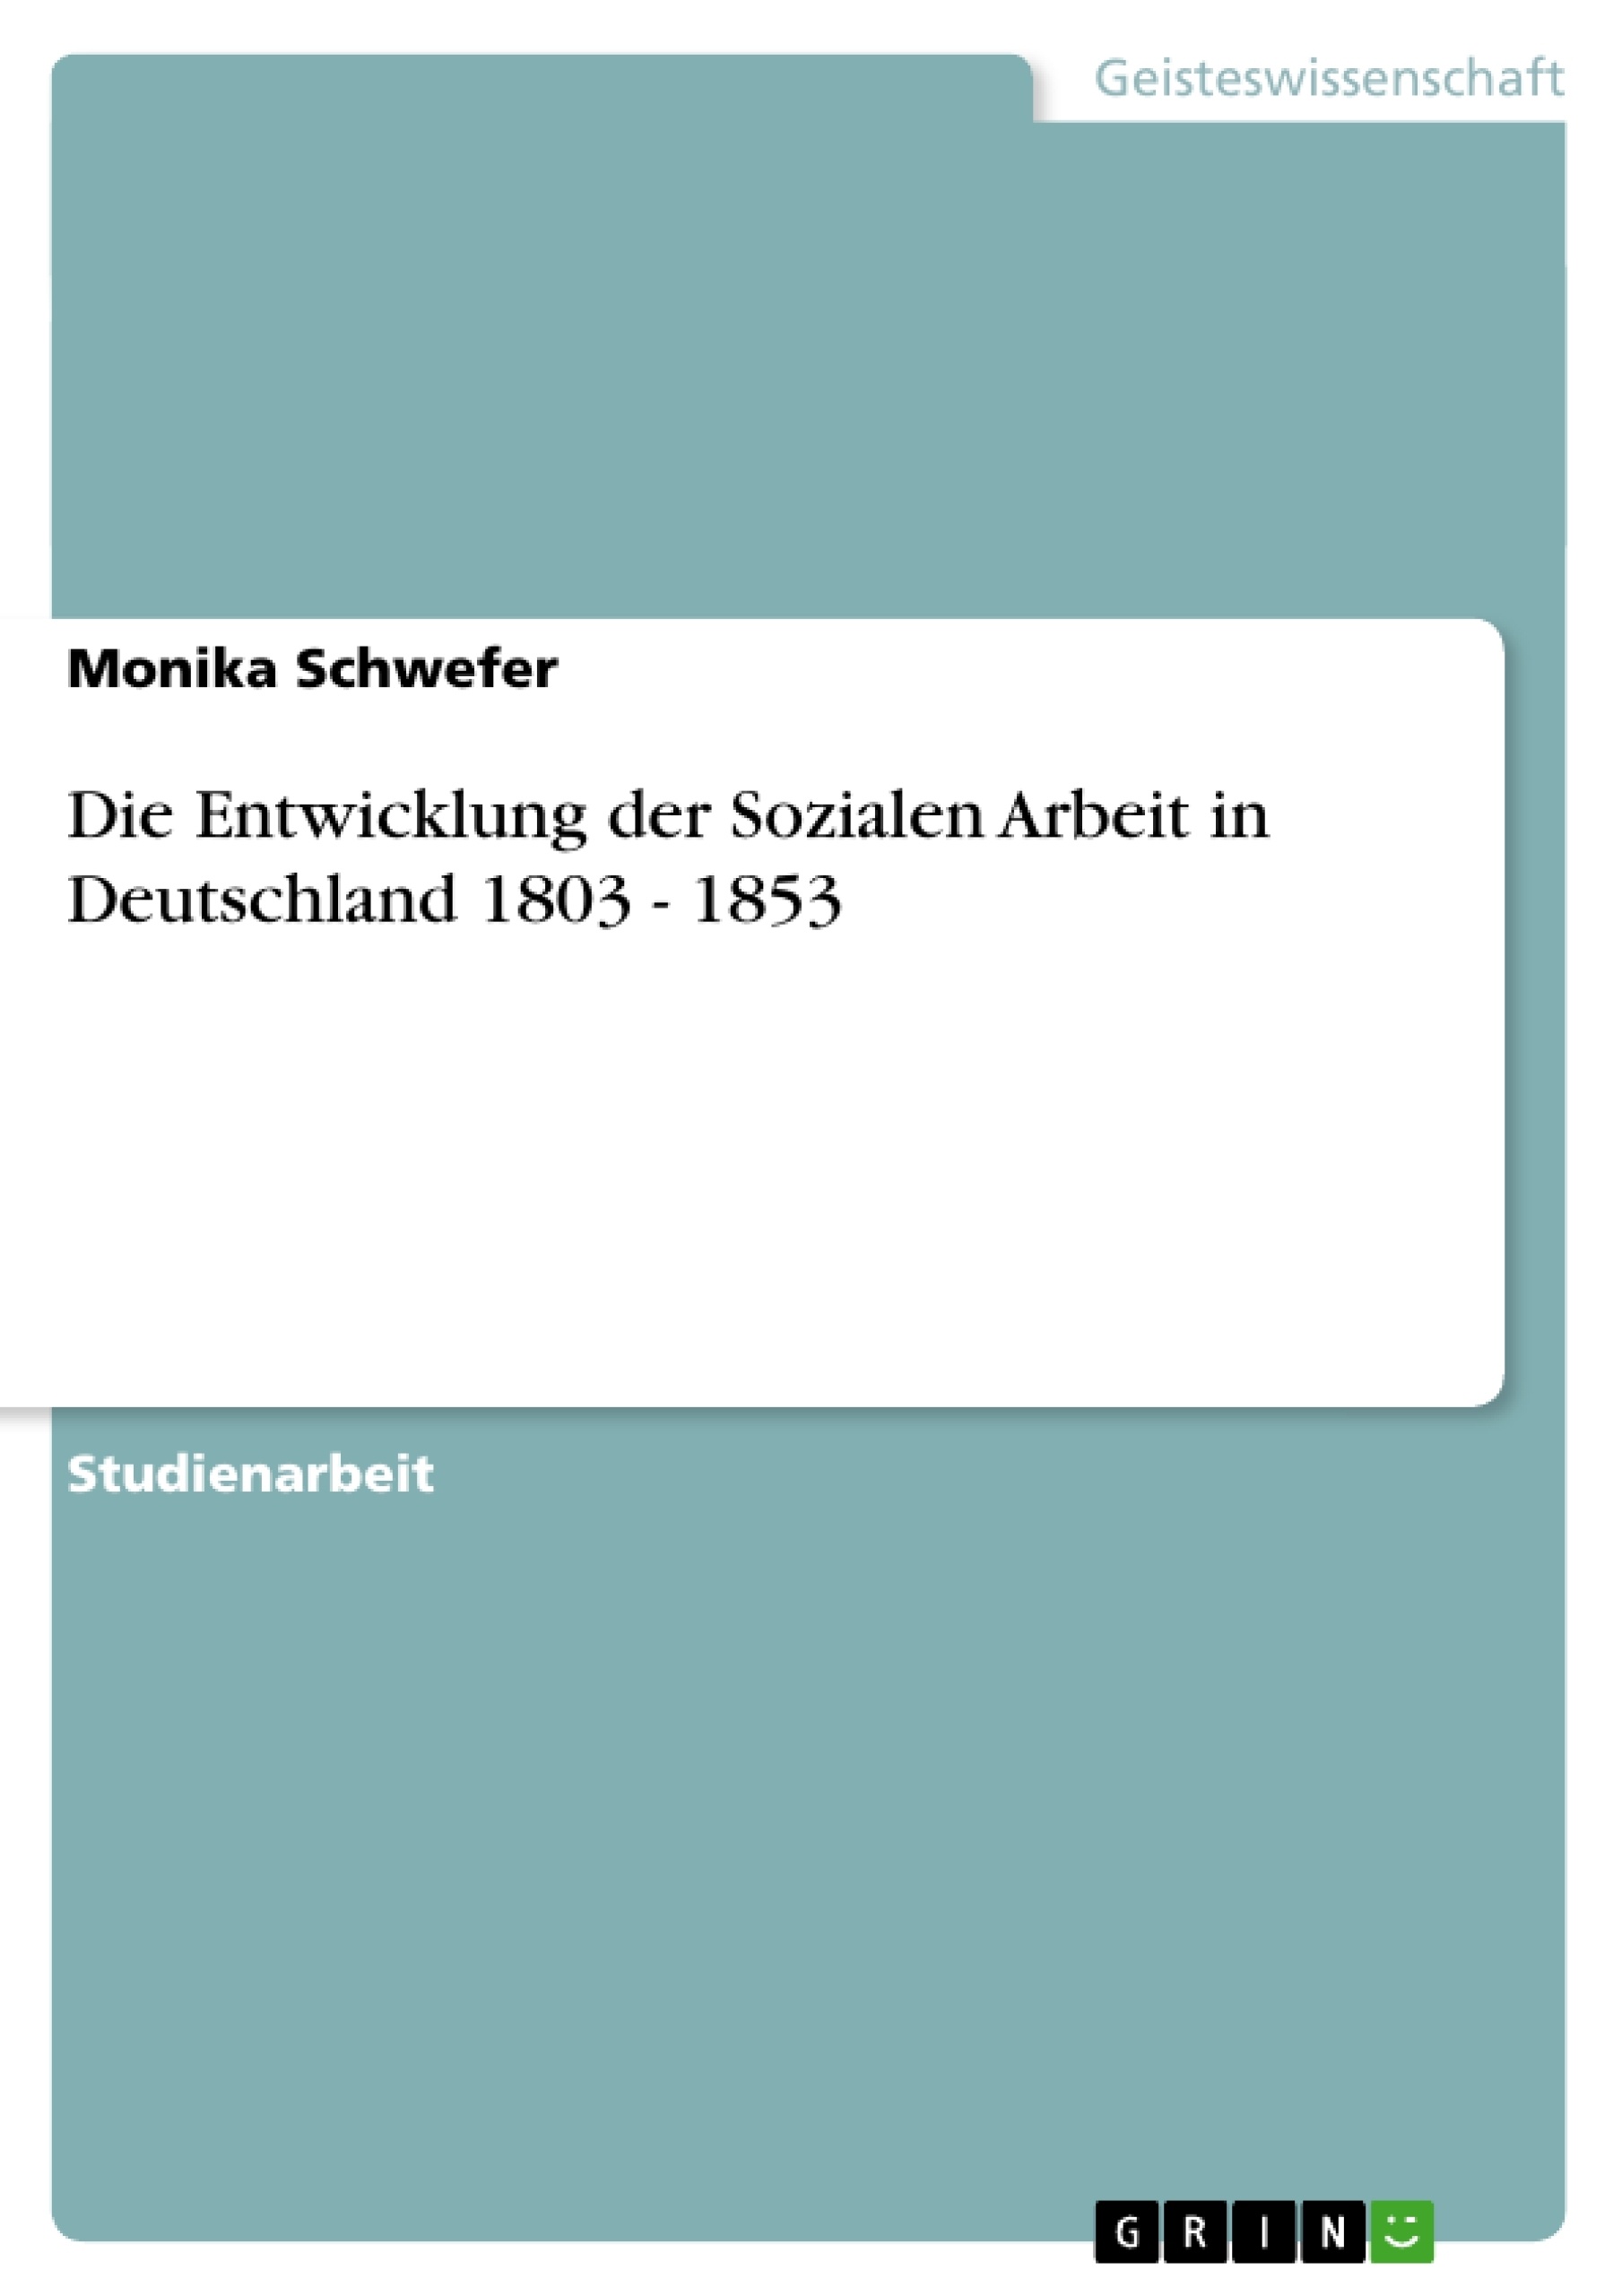 Title: Die Entwicklung der Sozialen Arbeit in Deutschland 1803 - 1853